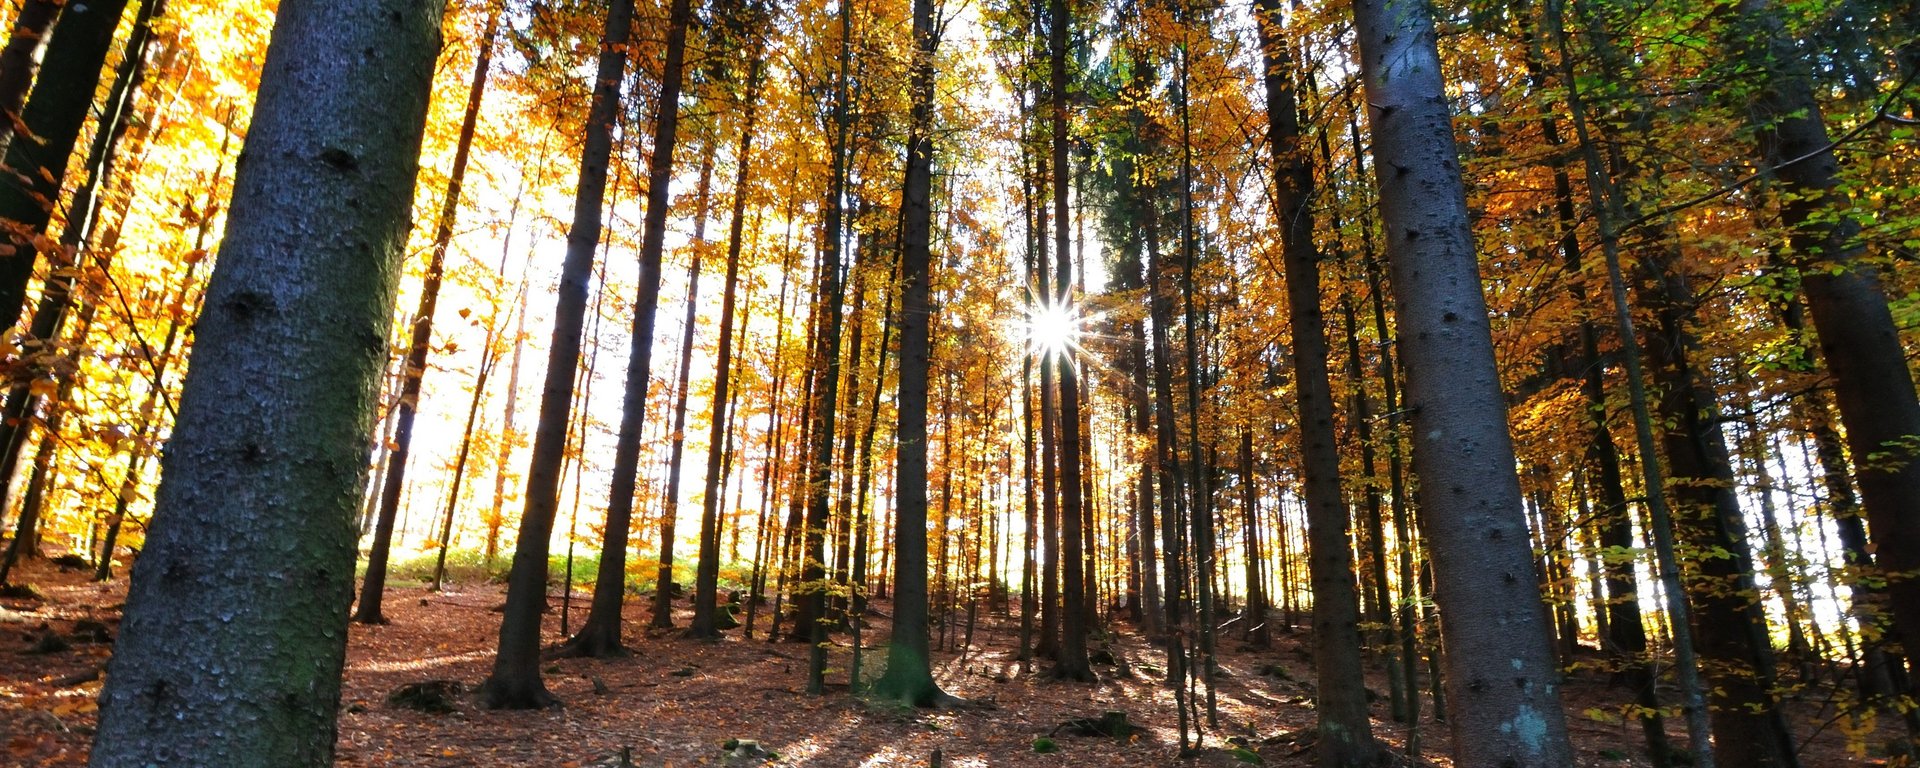 Wald mit Laubbäume im Herbstkleid mit Sonnenstrahlen 